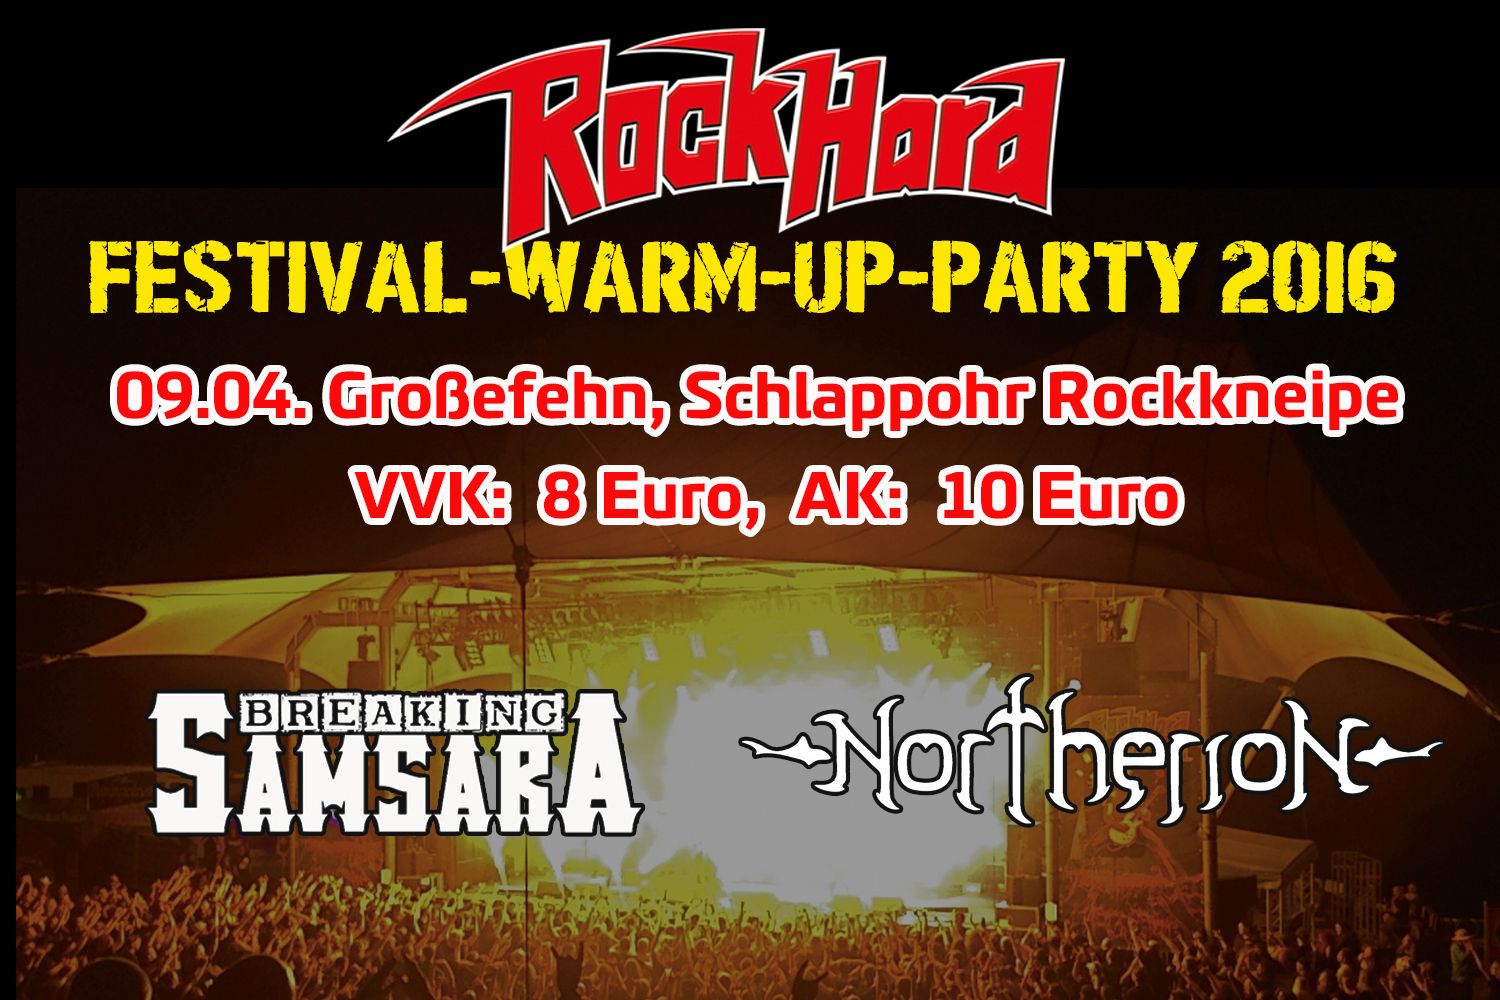 Breaking Samsara & Northerion spielen bei RHF-Warm-up-Party in Großefehn